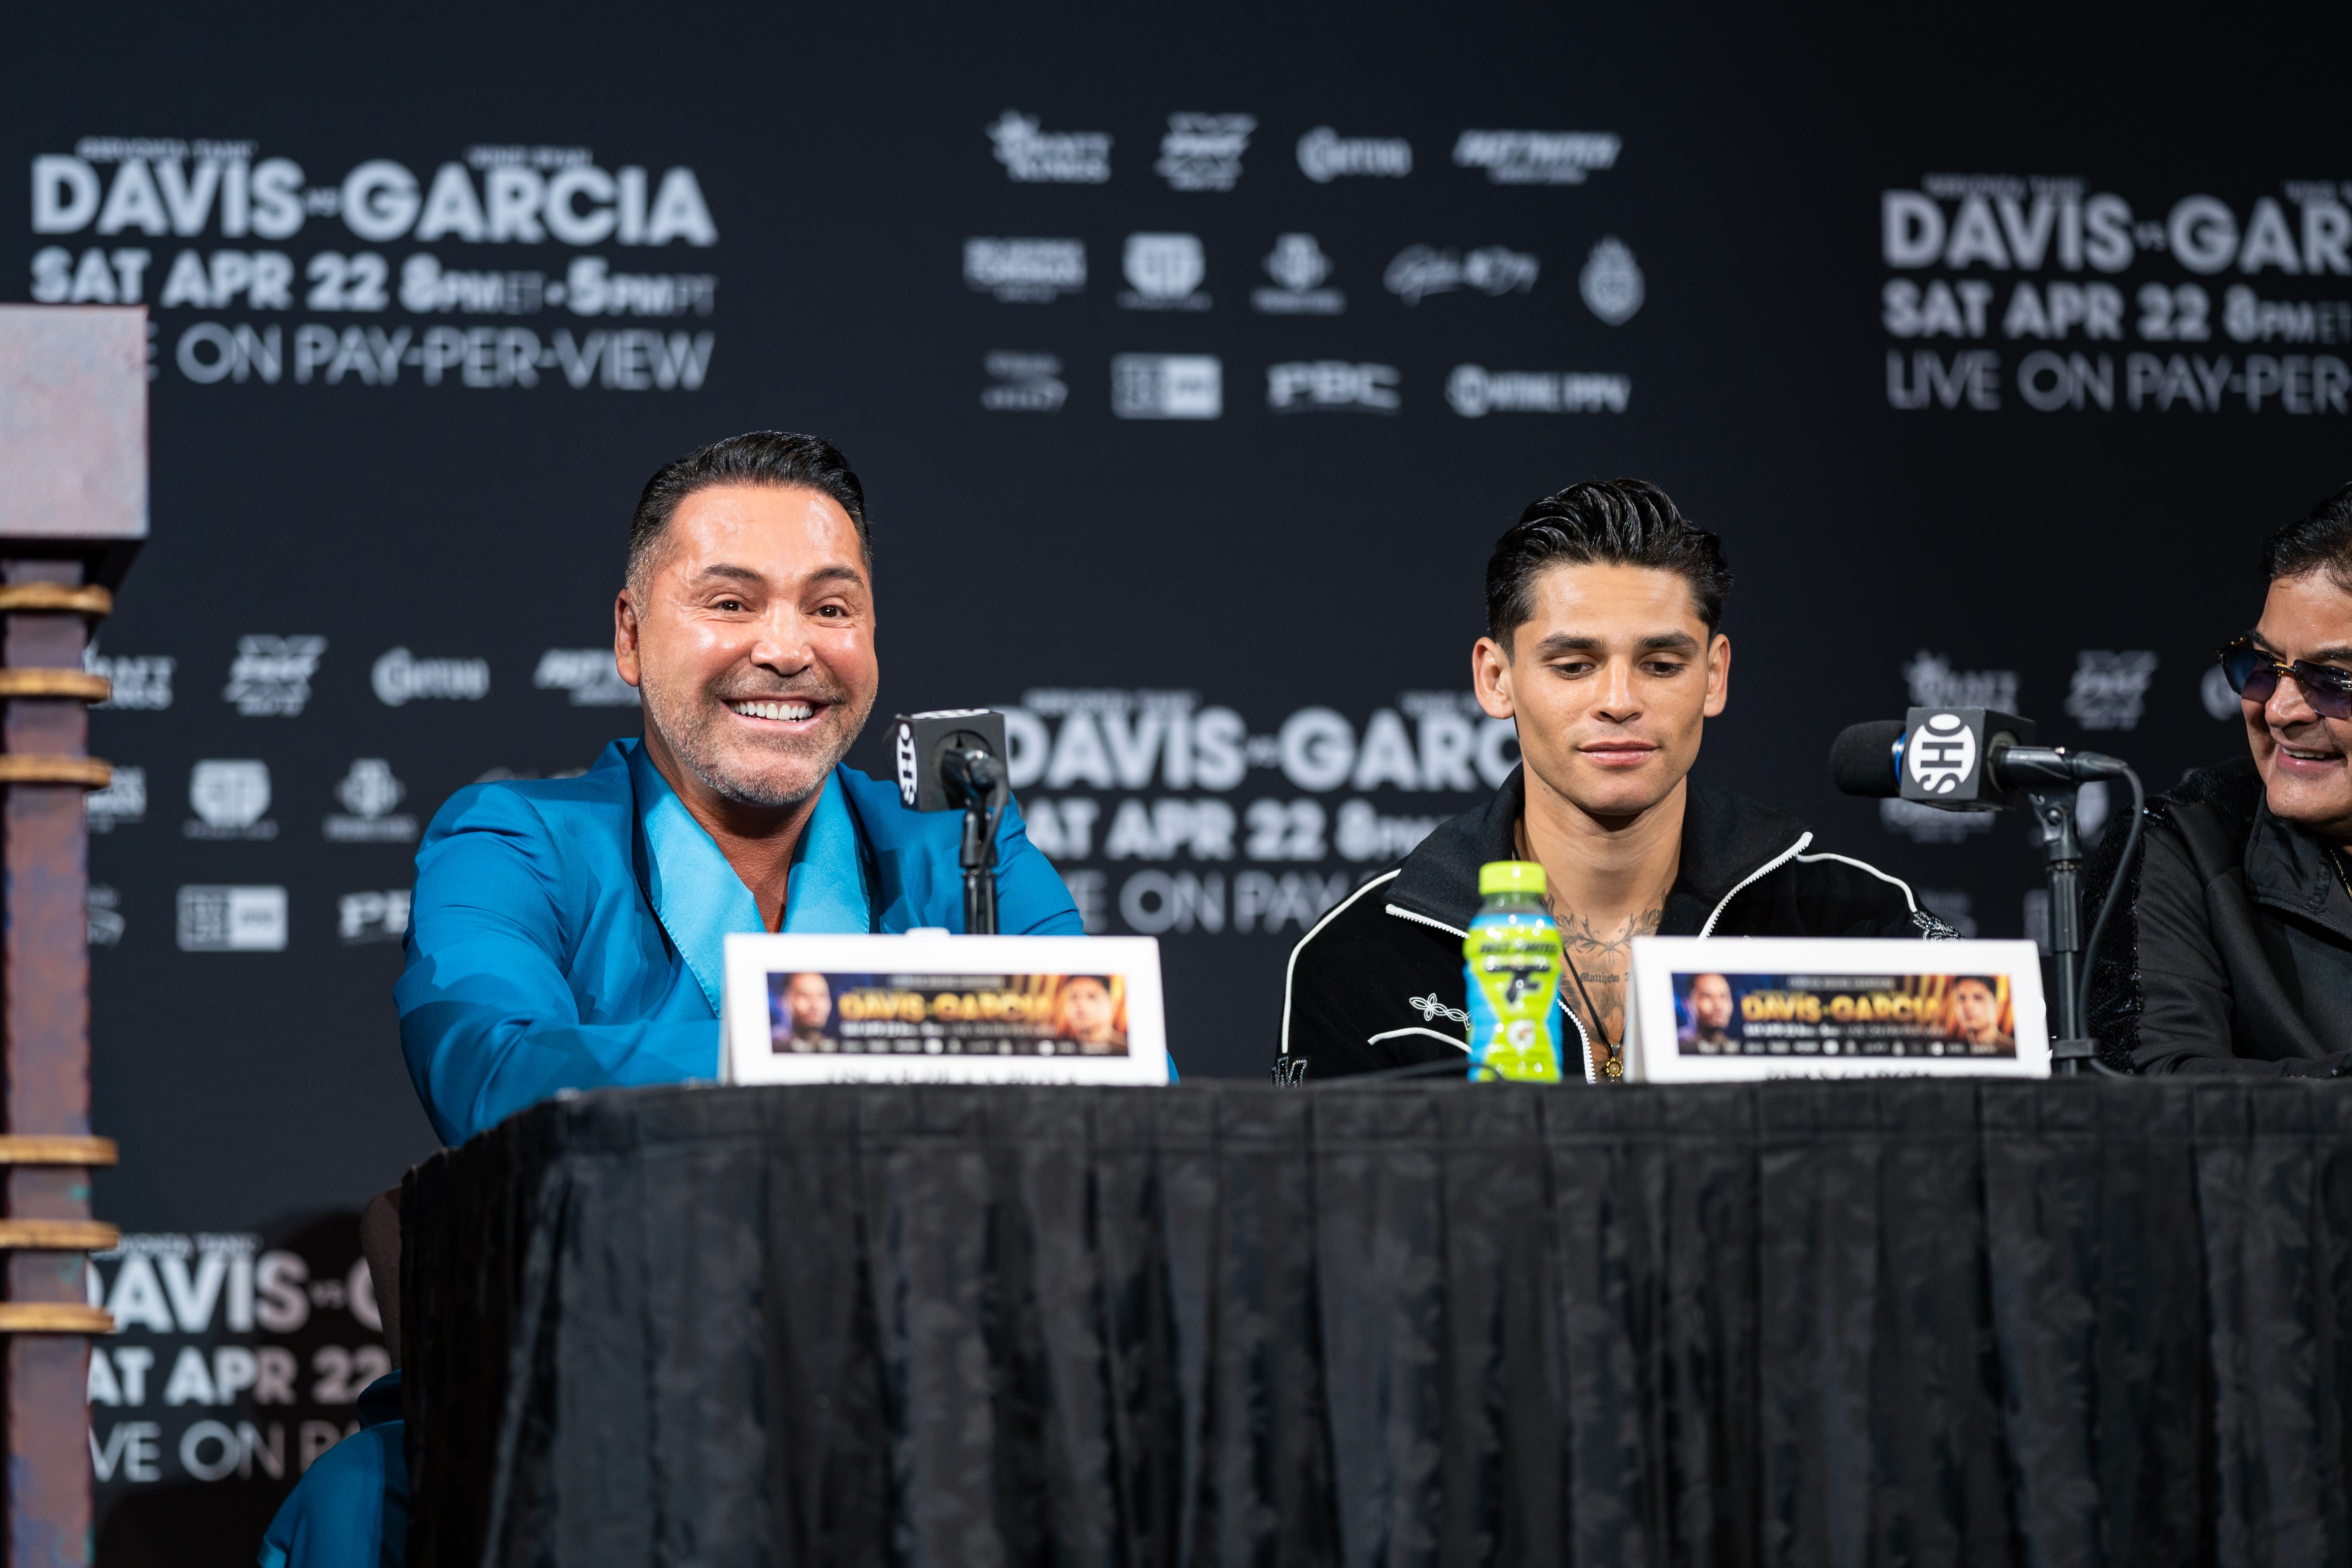 La estrella del boxeo García y su promotor De La Hoya, envueltos en una salvaje pelea en las redes sociales